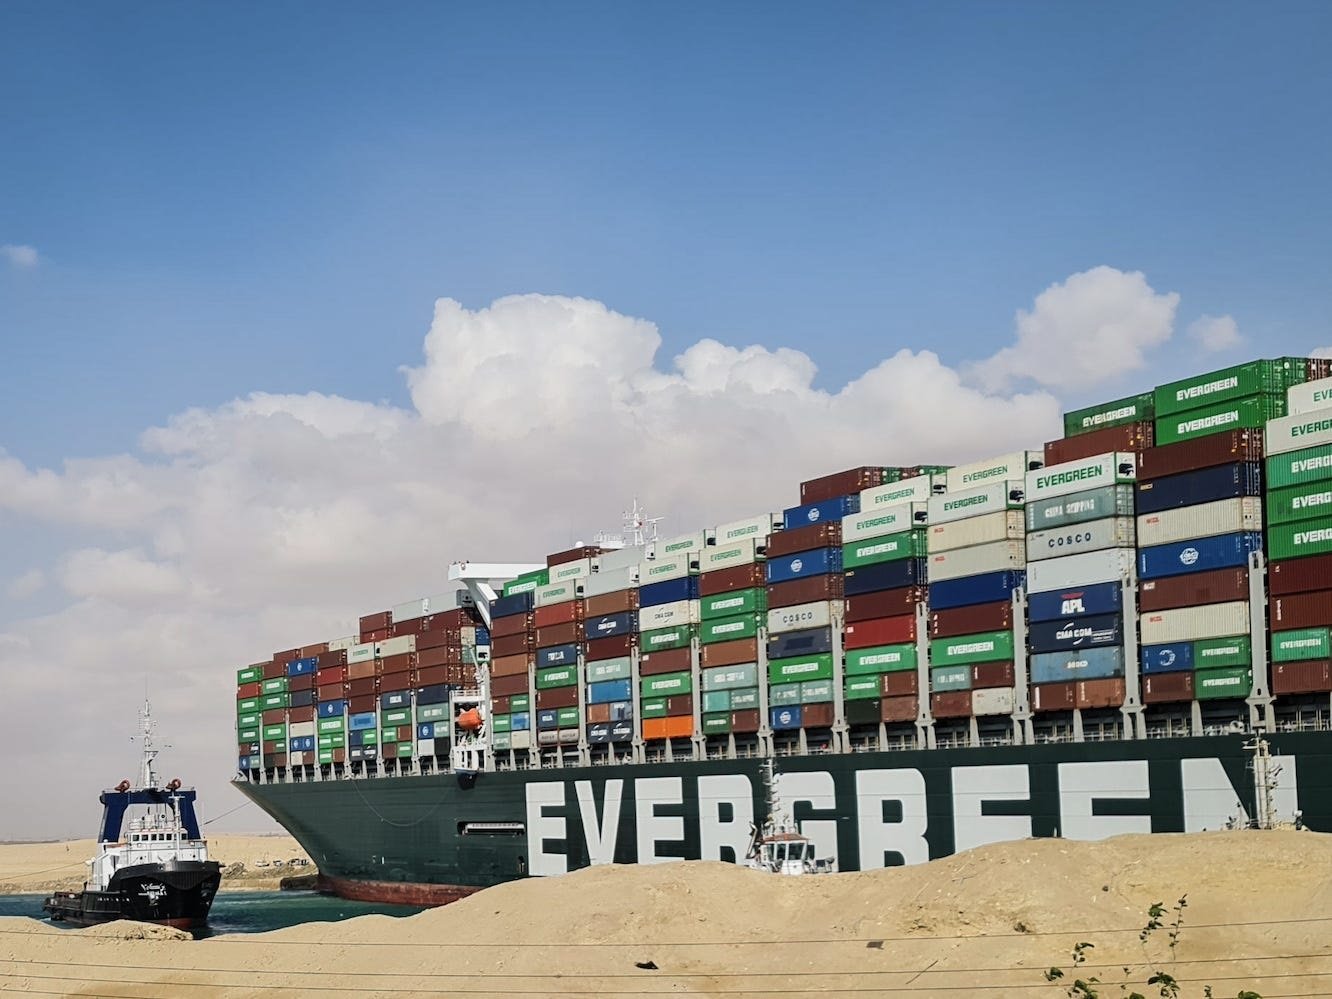 Animales varados en 20 barcos atrapados en la congestión en el Canal de Suez, expuestos a la inanición